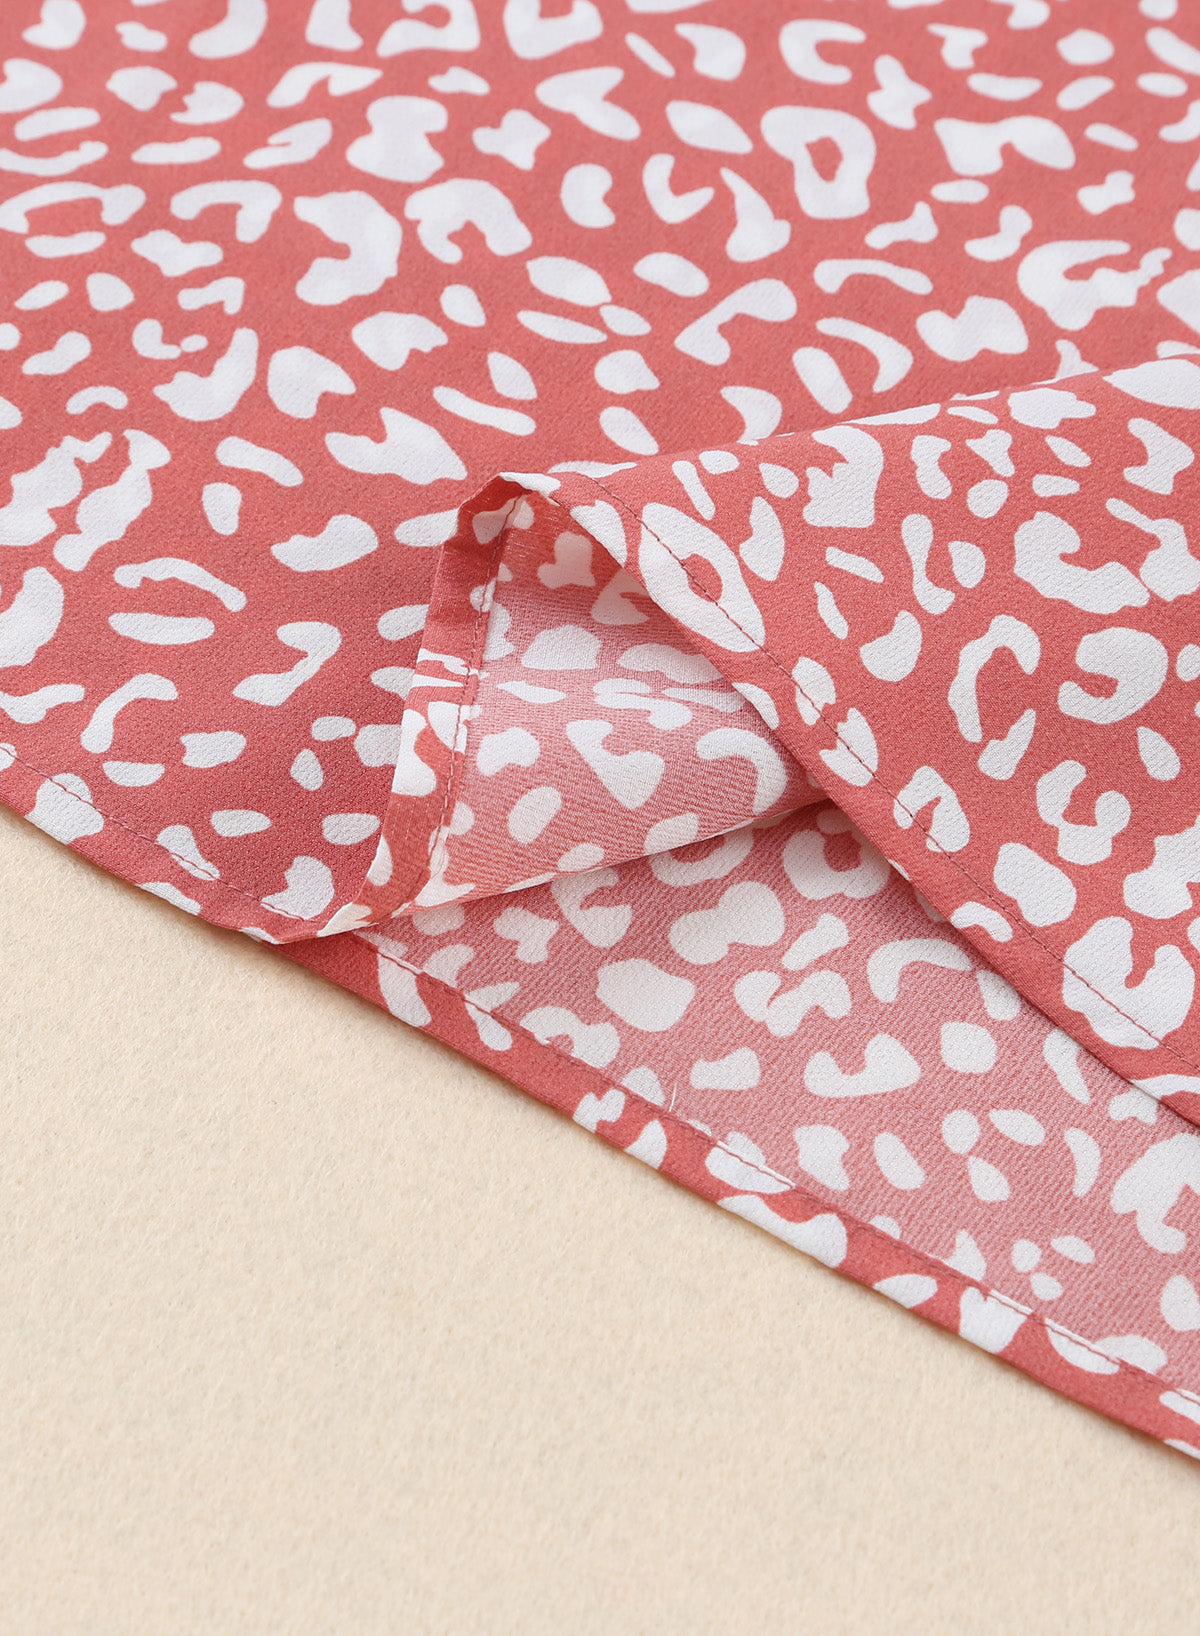 Leopard Print Round Neck Frill Trim Blouse (2 Colors)  Krazy Heart Designs Boutique   